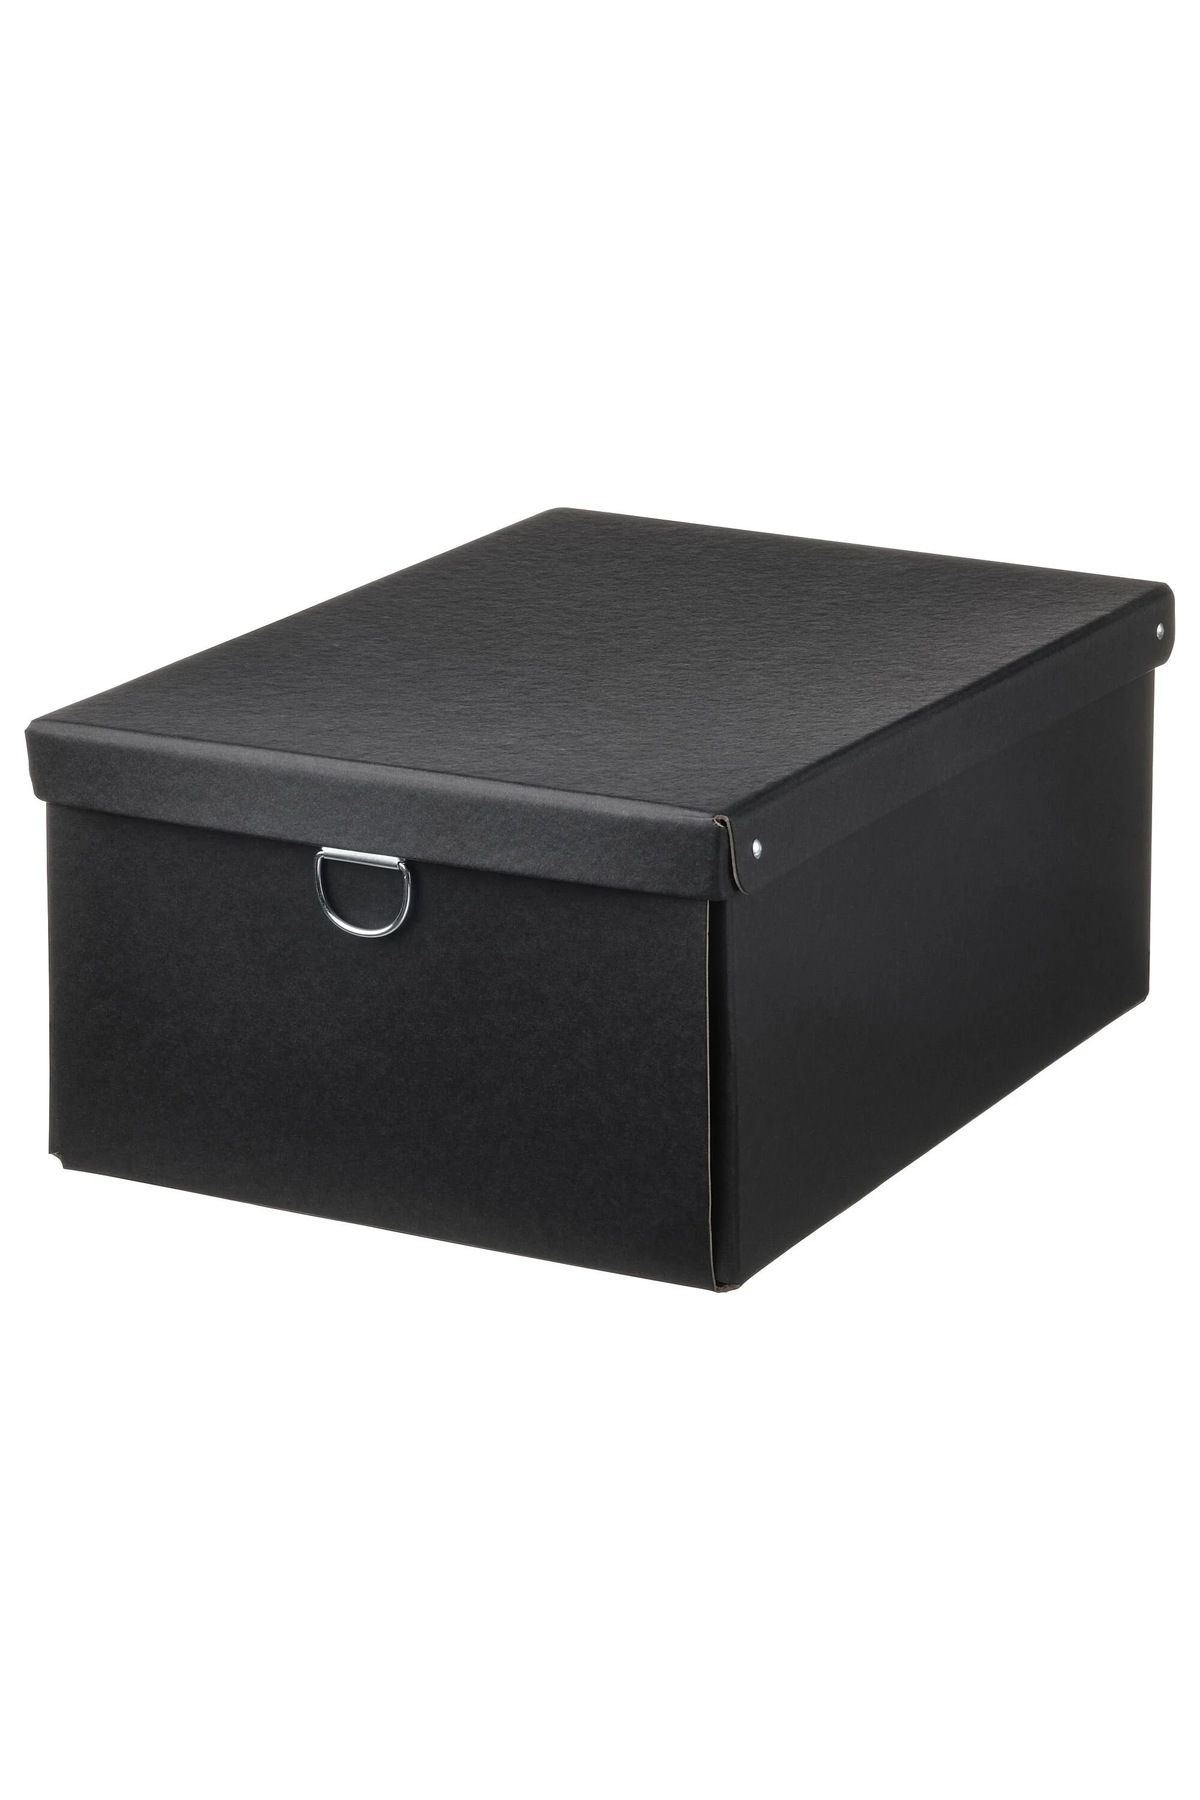 IKEA Siyah Nimm Kapaklı Kutu 25x35x15 cm, Düzenleyici, Hediye Kutusu